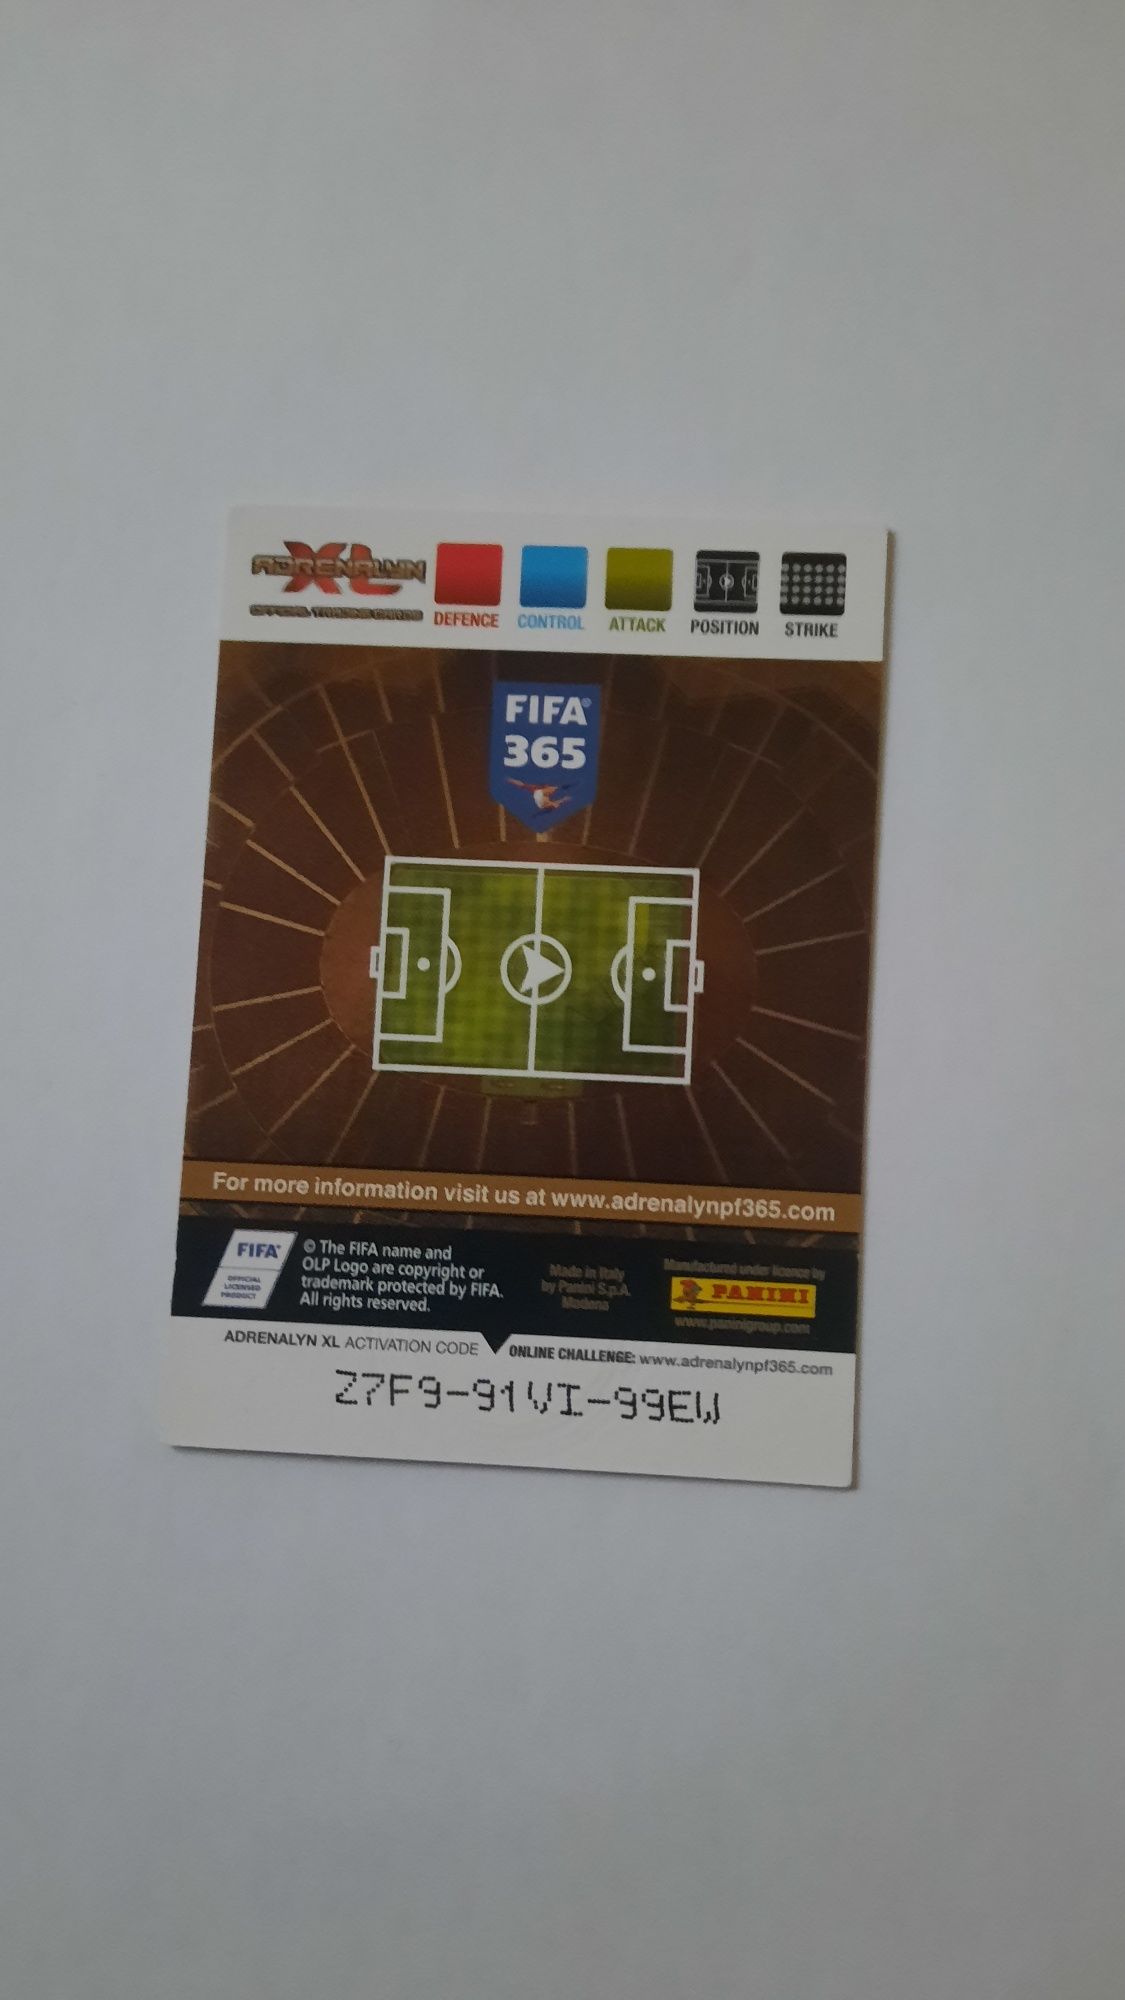 Karta piłkarska FIFA 365 Jurgen Klinsmann rare